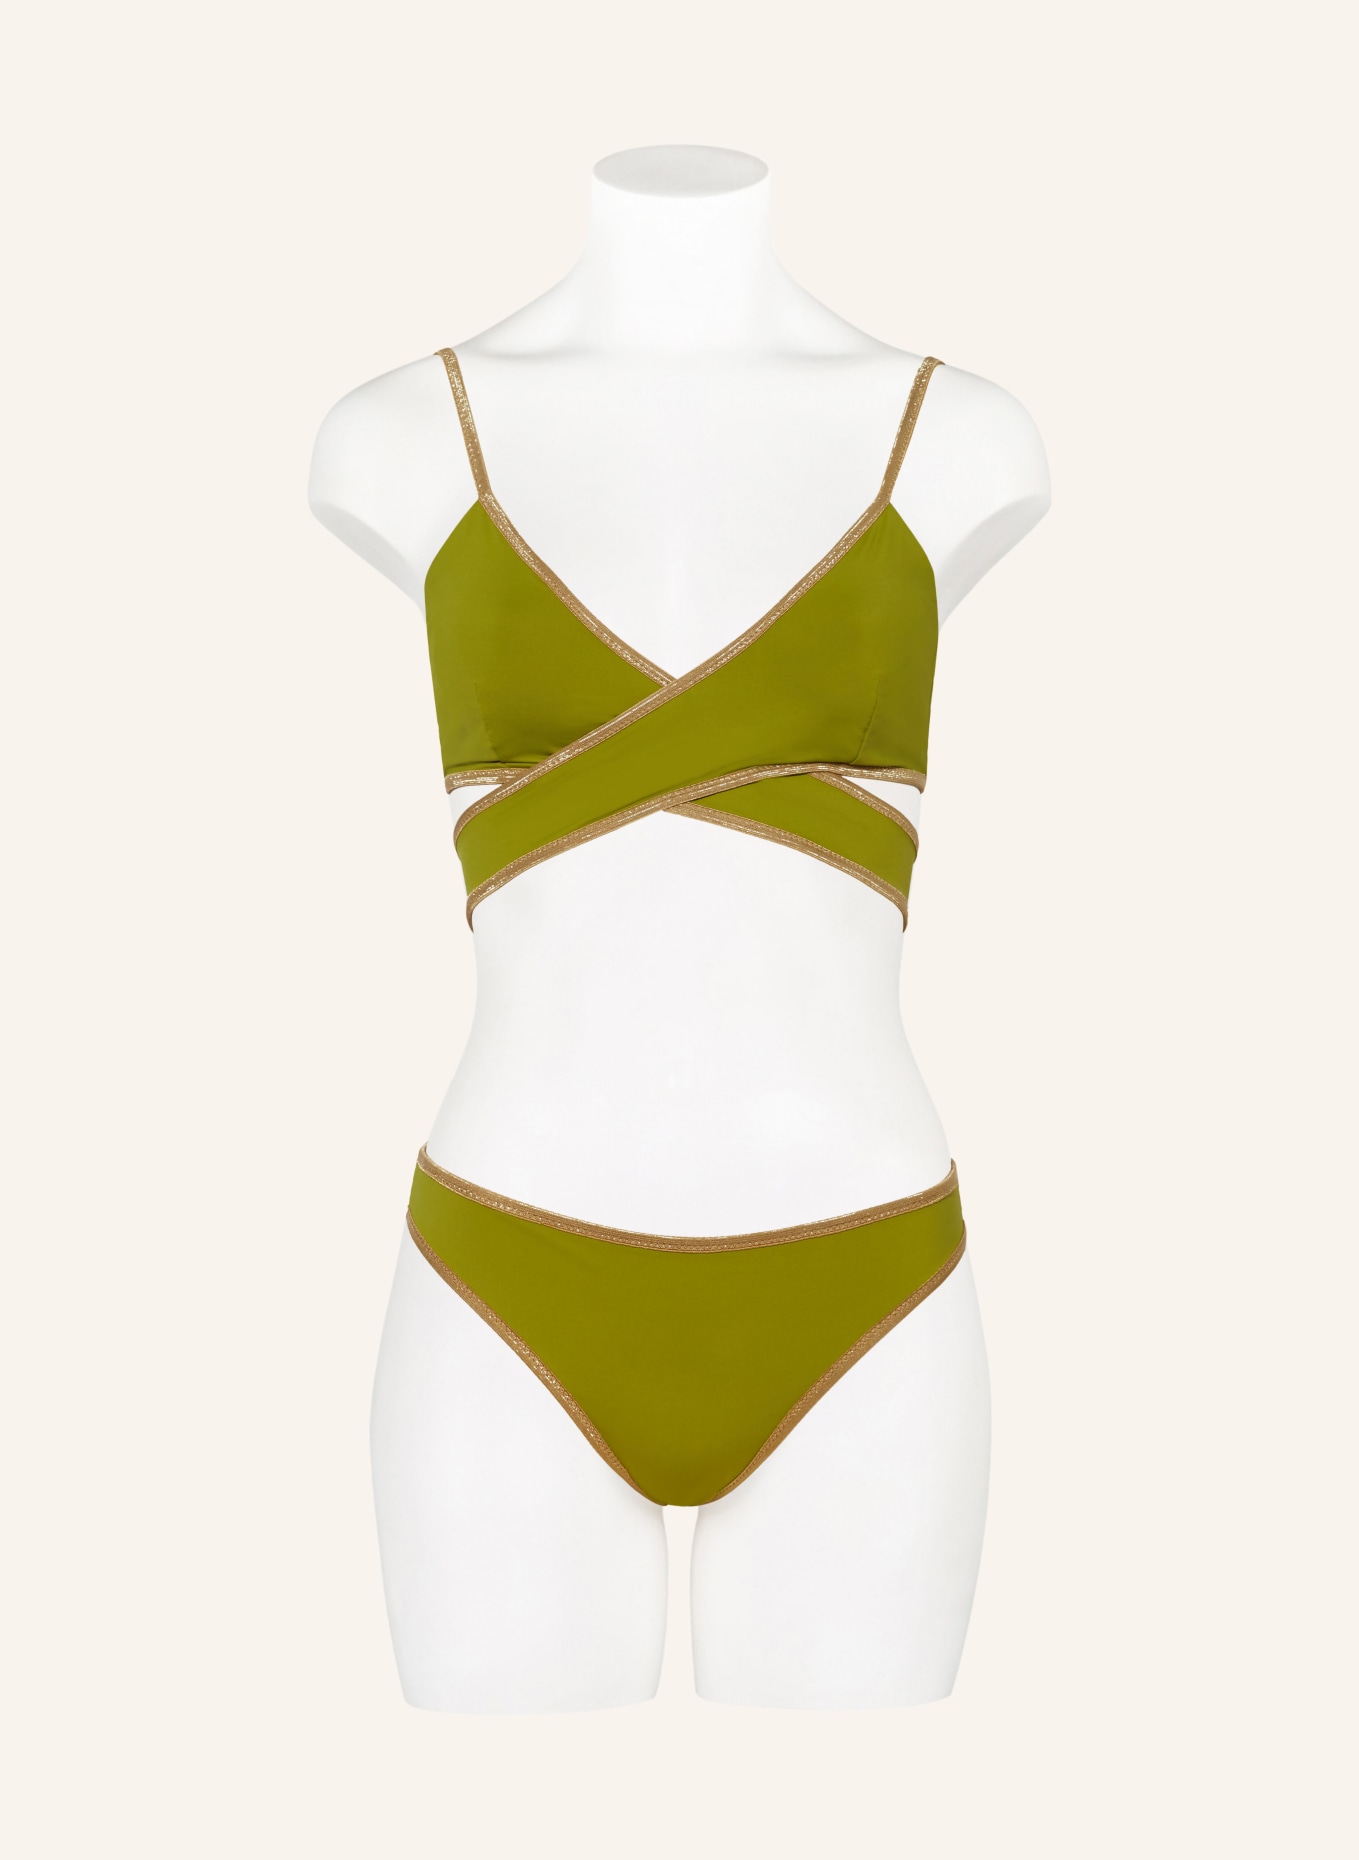 MYMARINI Bralette bikini top SHINE reversible, Color: LIGHT GREEN/ OLIVE (Image 4)